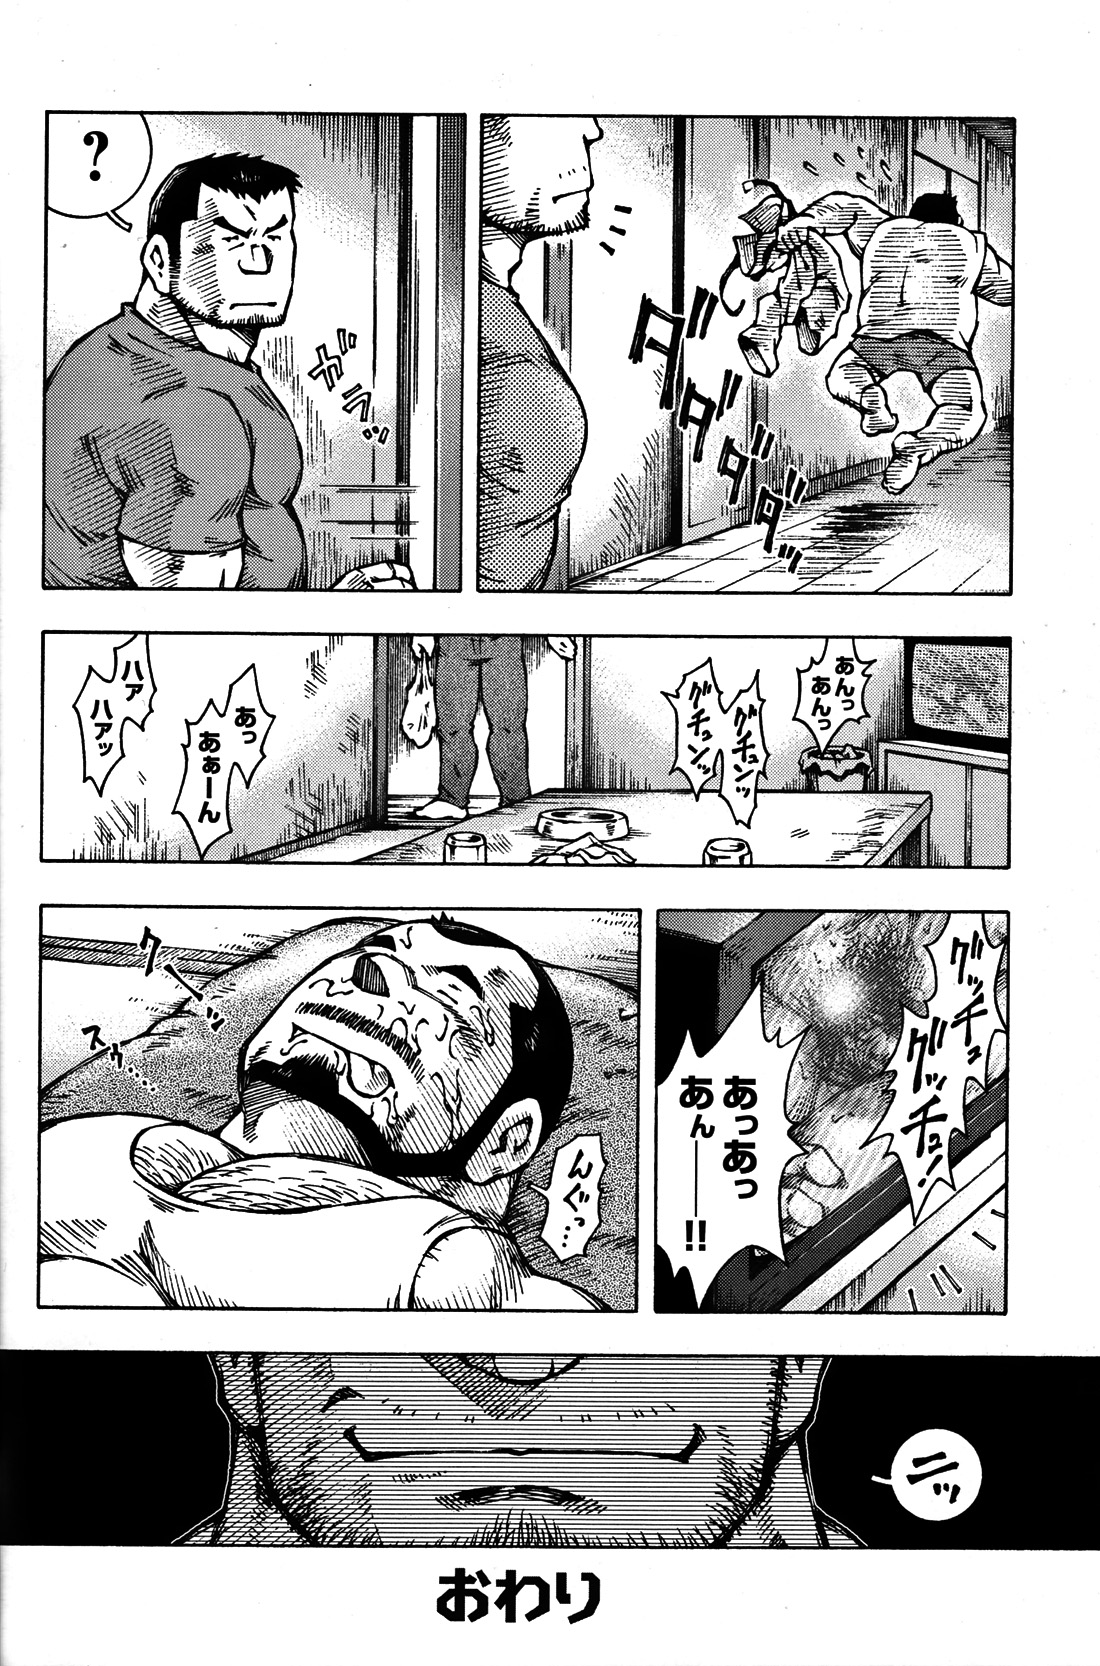 Comic G-men Gaho No. 06 Nikutai Roudousha page 27 full